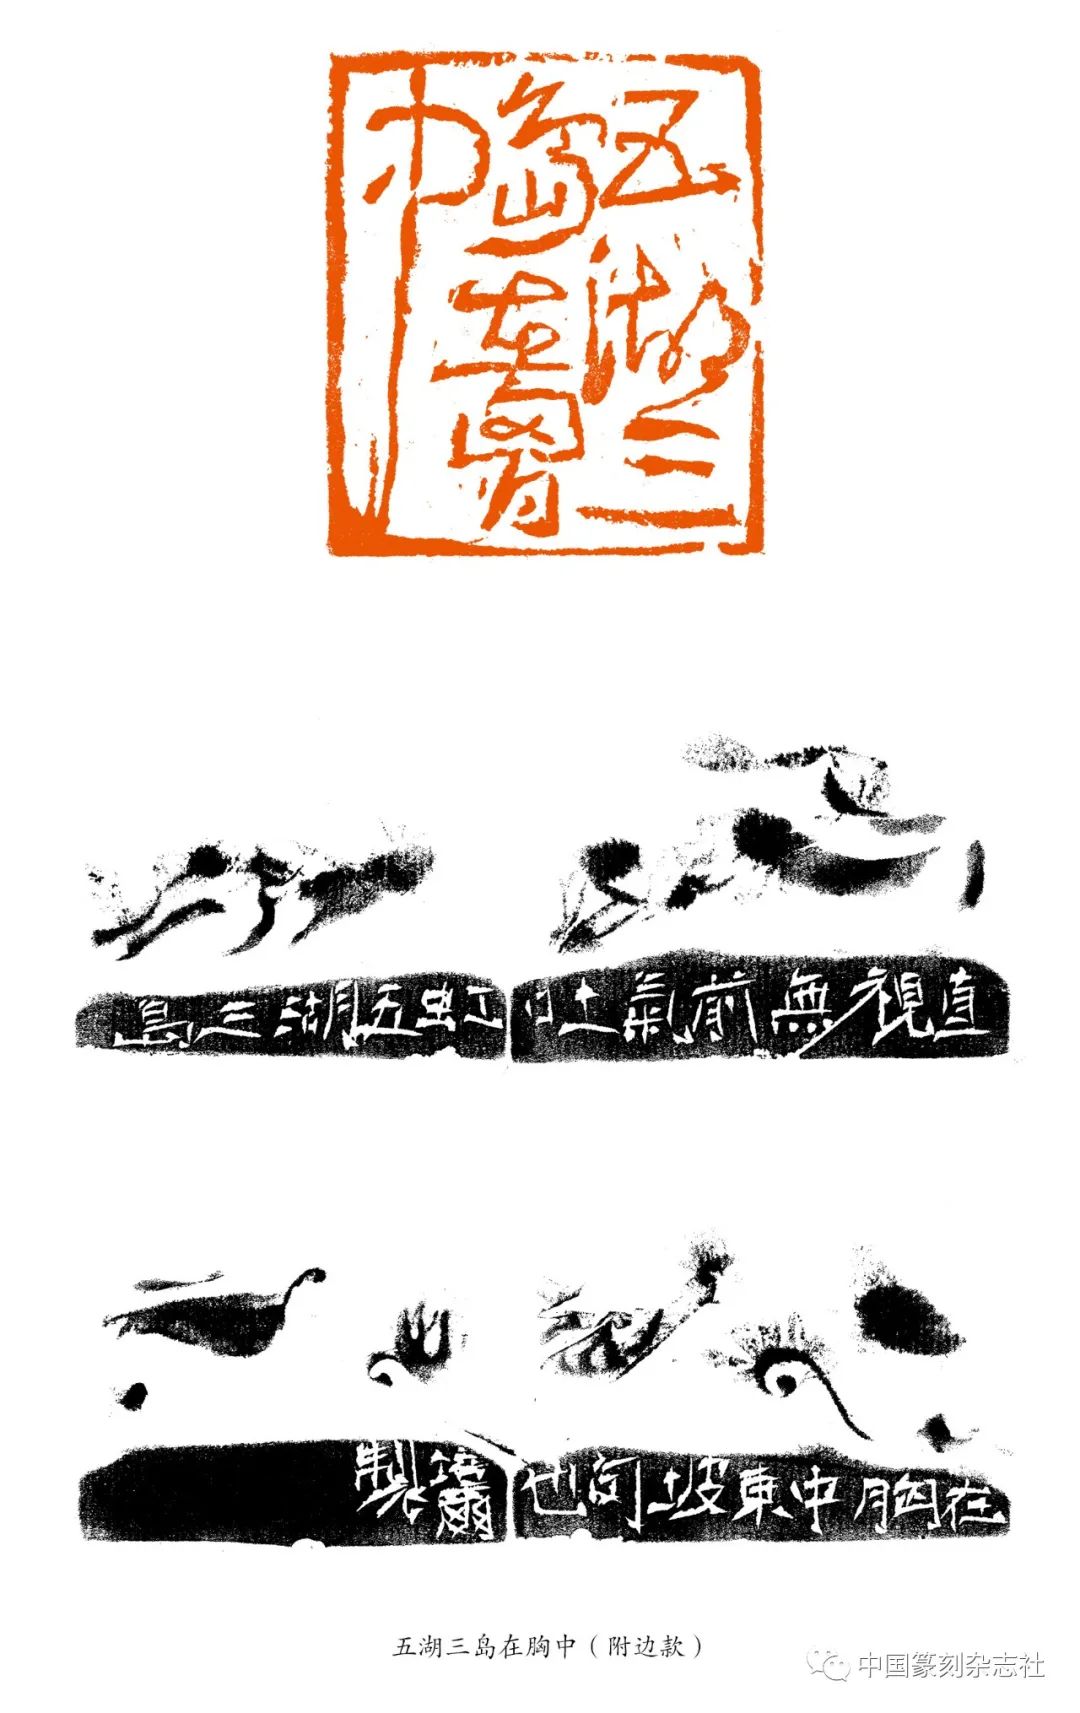 著名篆刻家朱培尔印章之妙趣（一）：随机偶得  灵性迸发